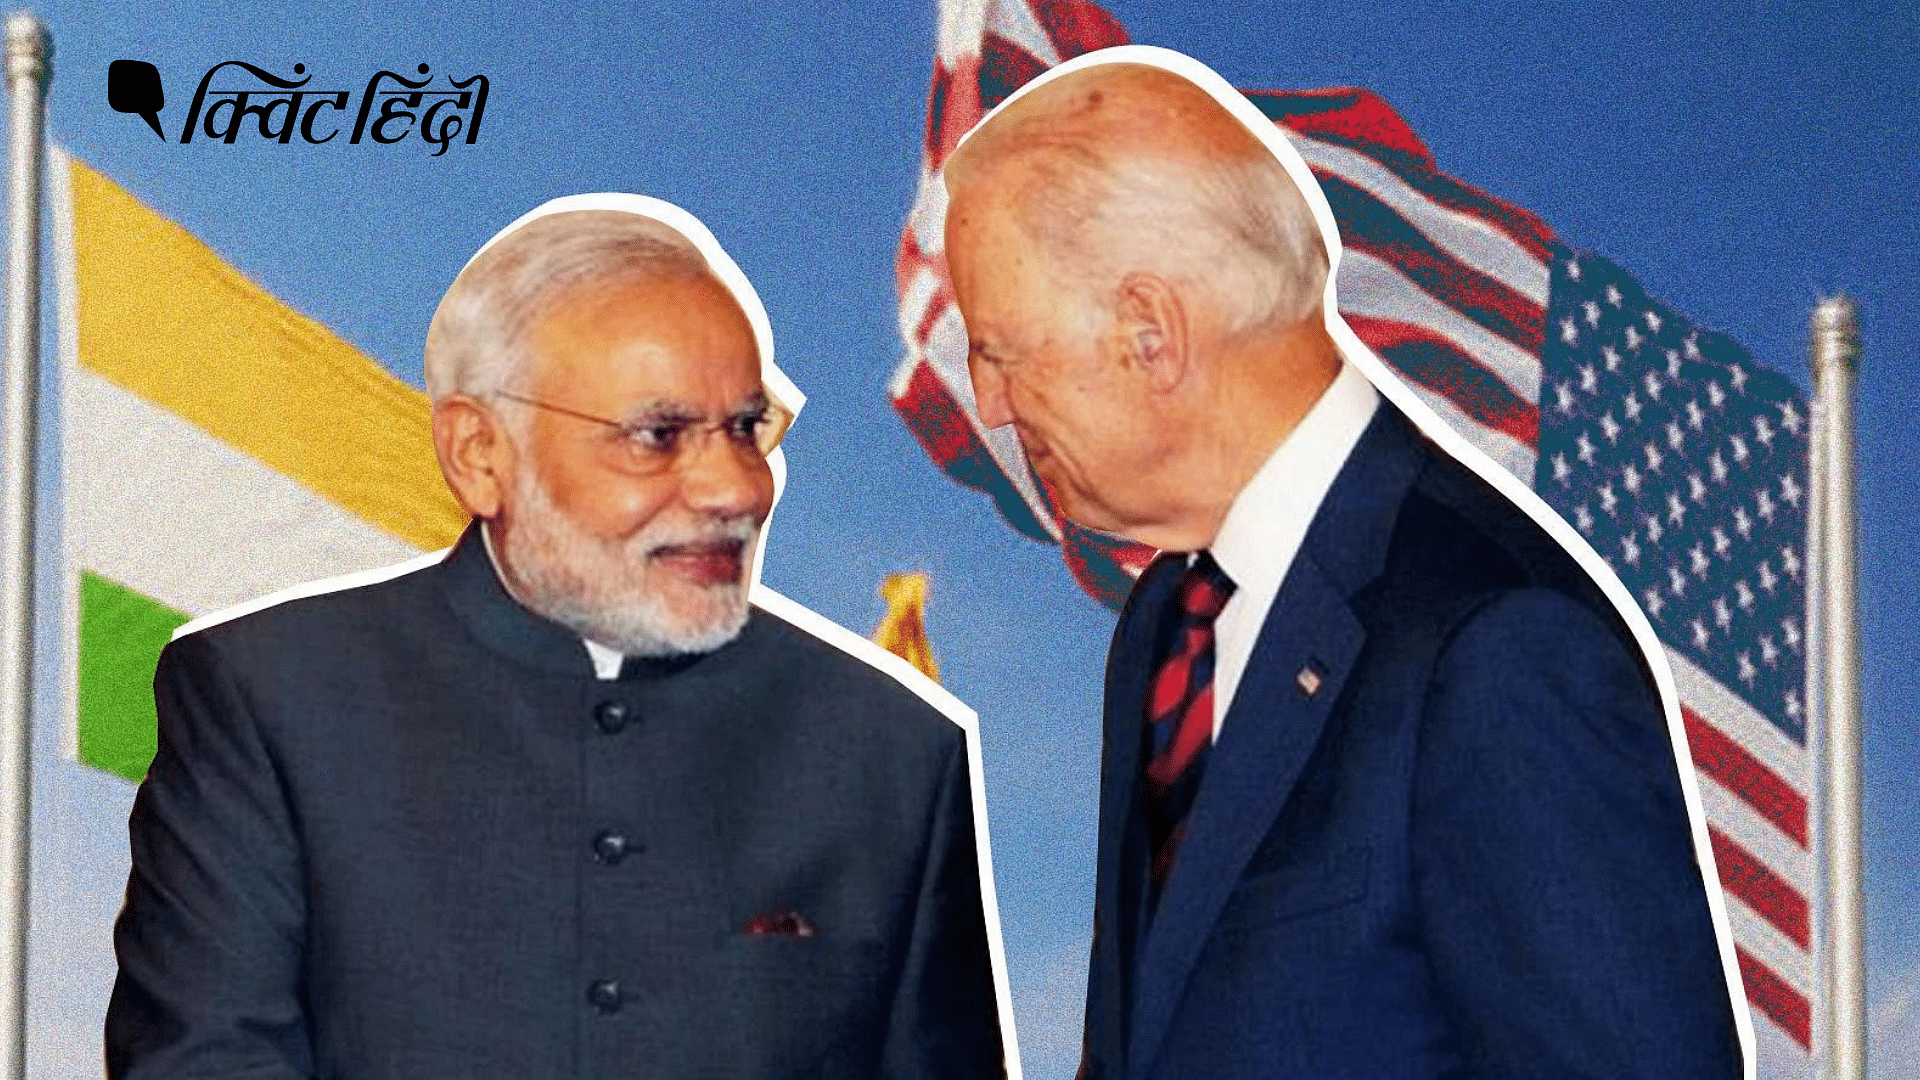 <div class="paragraphs"><p>भारत के प्रधान मंत्री नरेंद्र मोदी और अमेरिकी राष्ट्रपति जो बाइडेन&nbsp;</p></div>